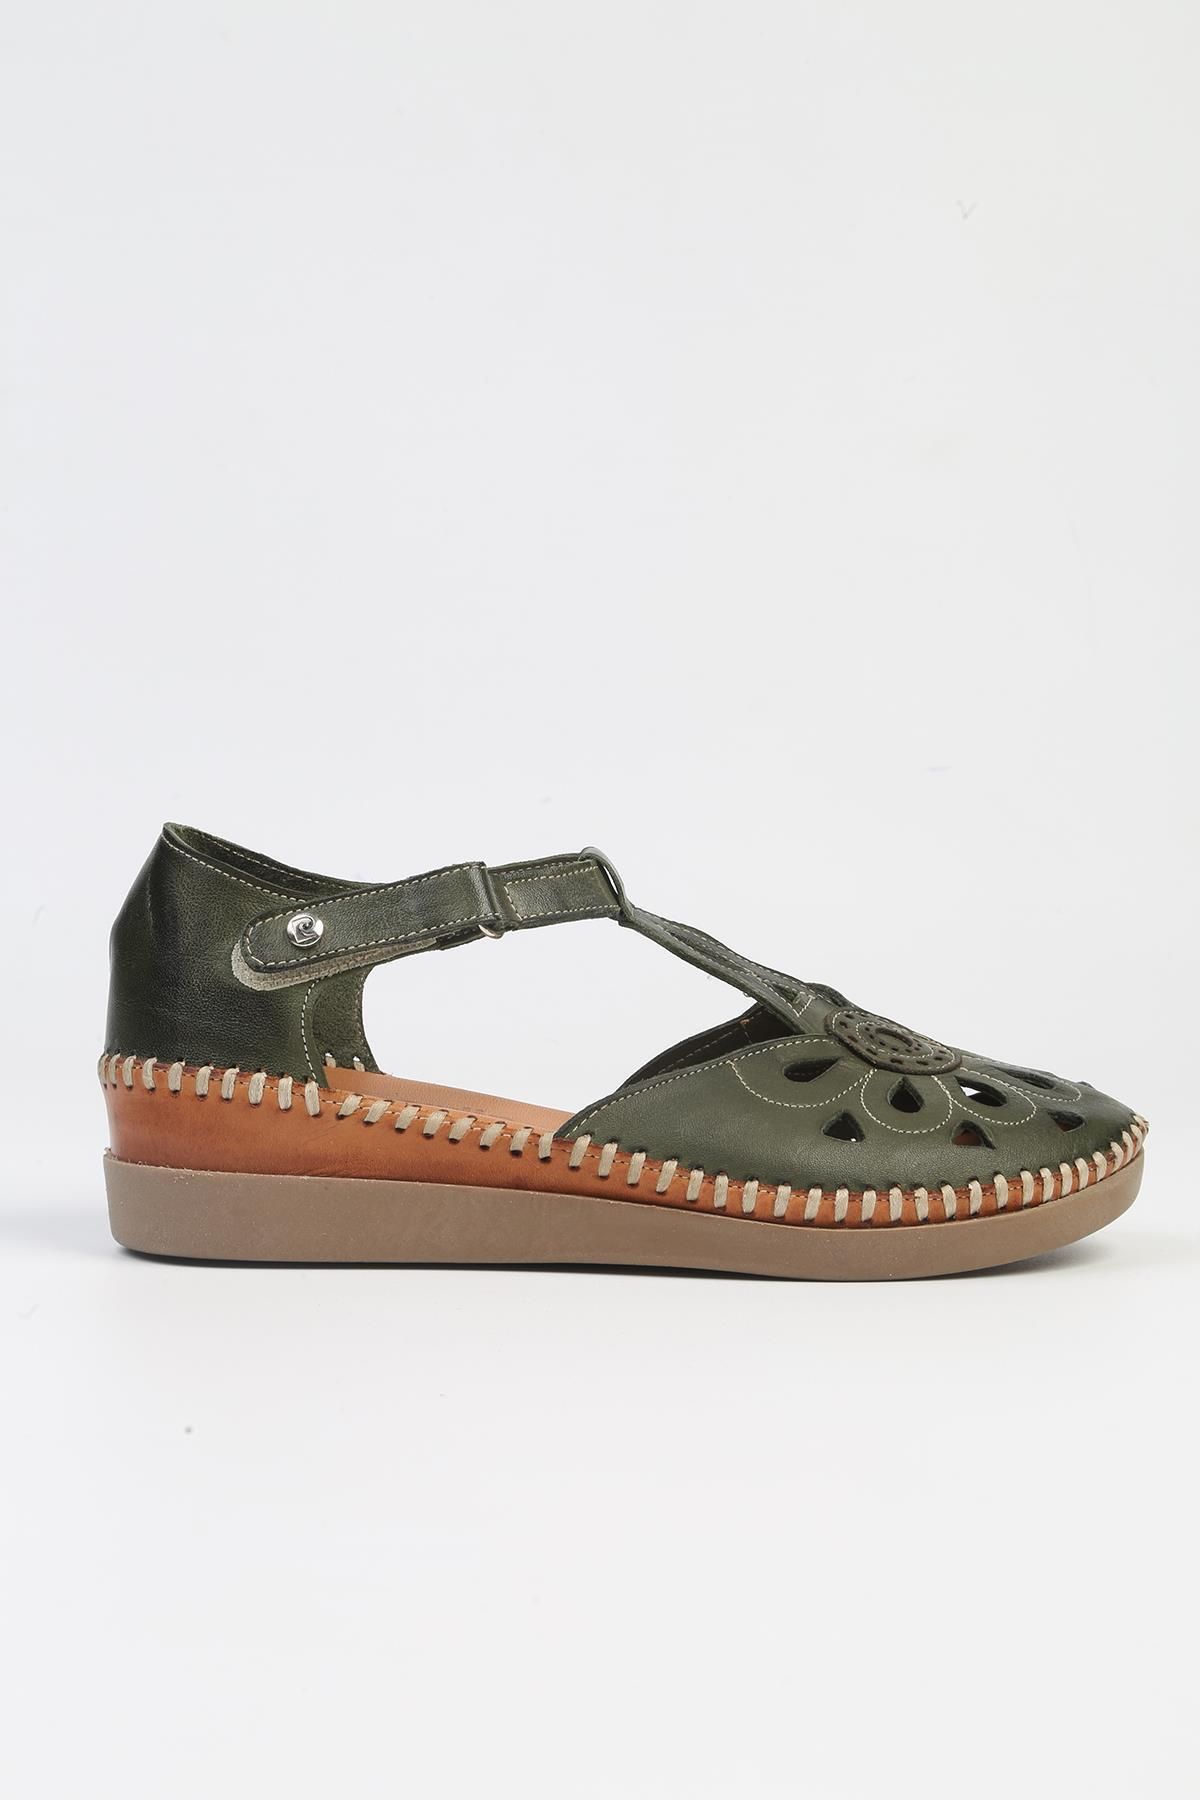 Pierre Cardin ® | PC-53024- 3963 Haki-Kadın Topuklu Günlük Ayakkabı